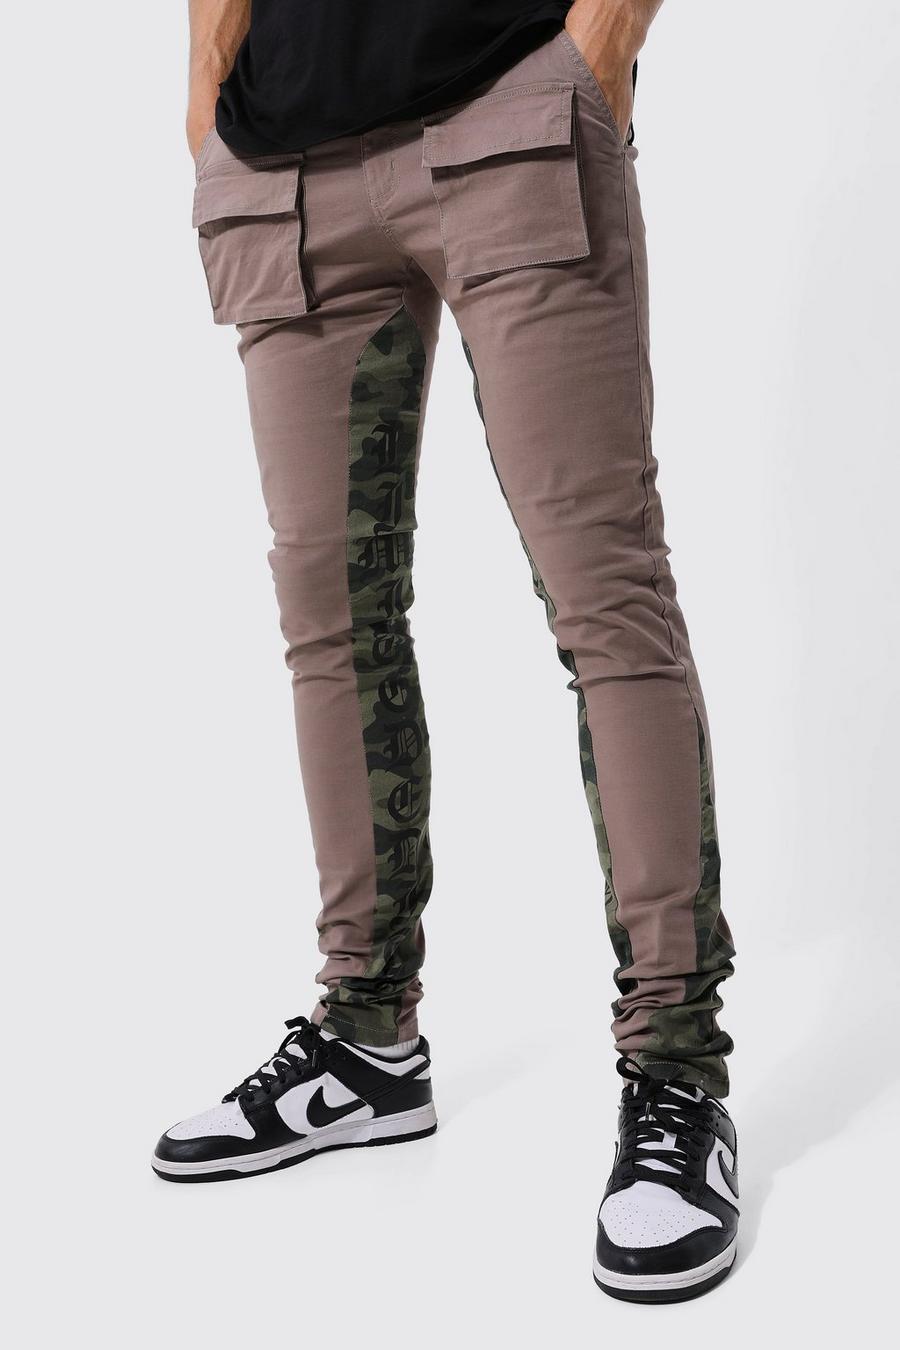 Pantaloni Cargo Tall in fantasia militare con inserti Skinny Fit fissi, Chocolate